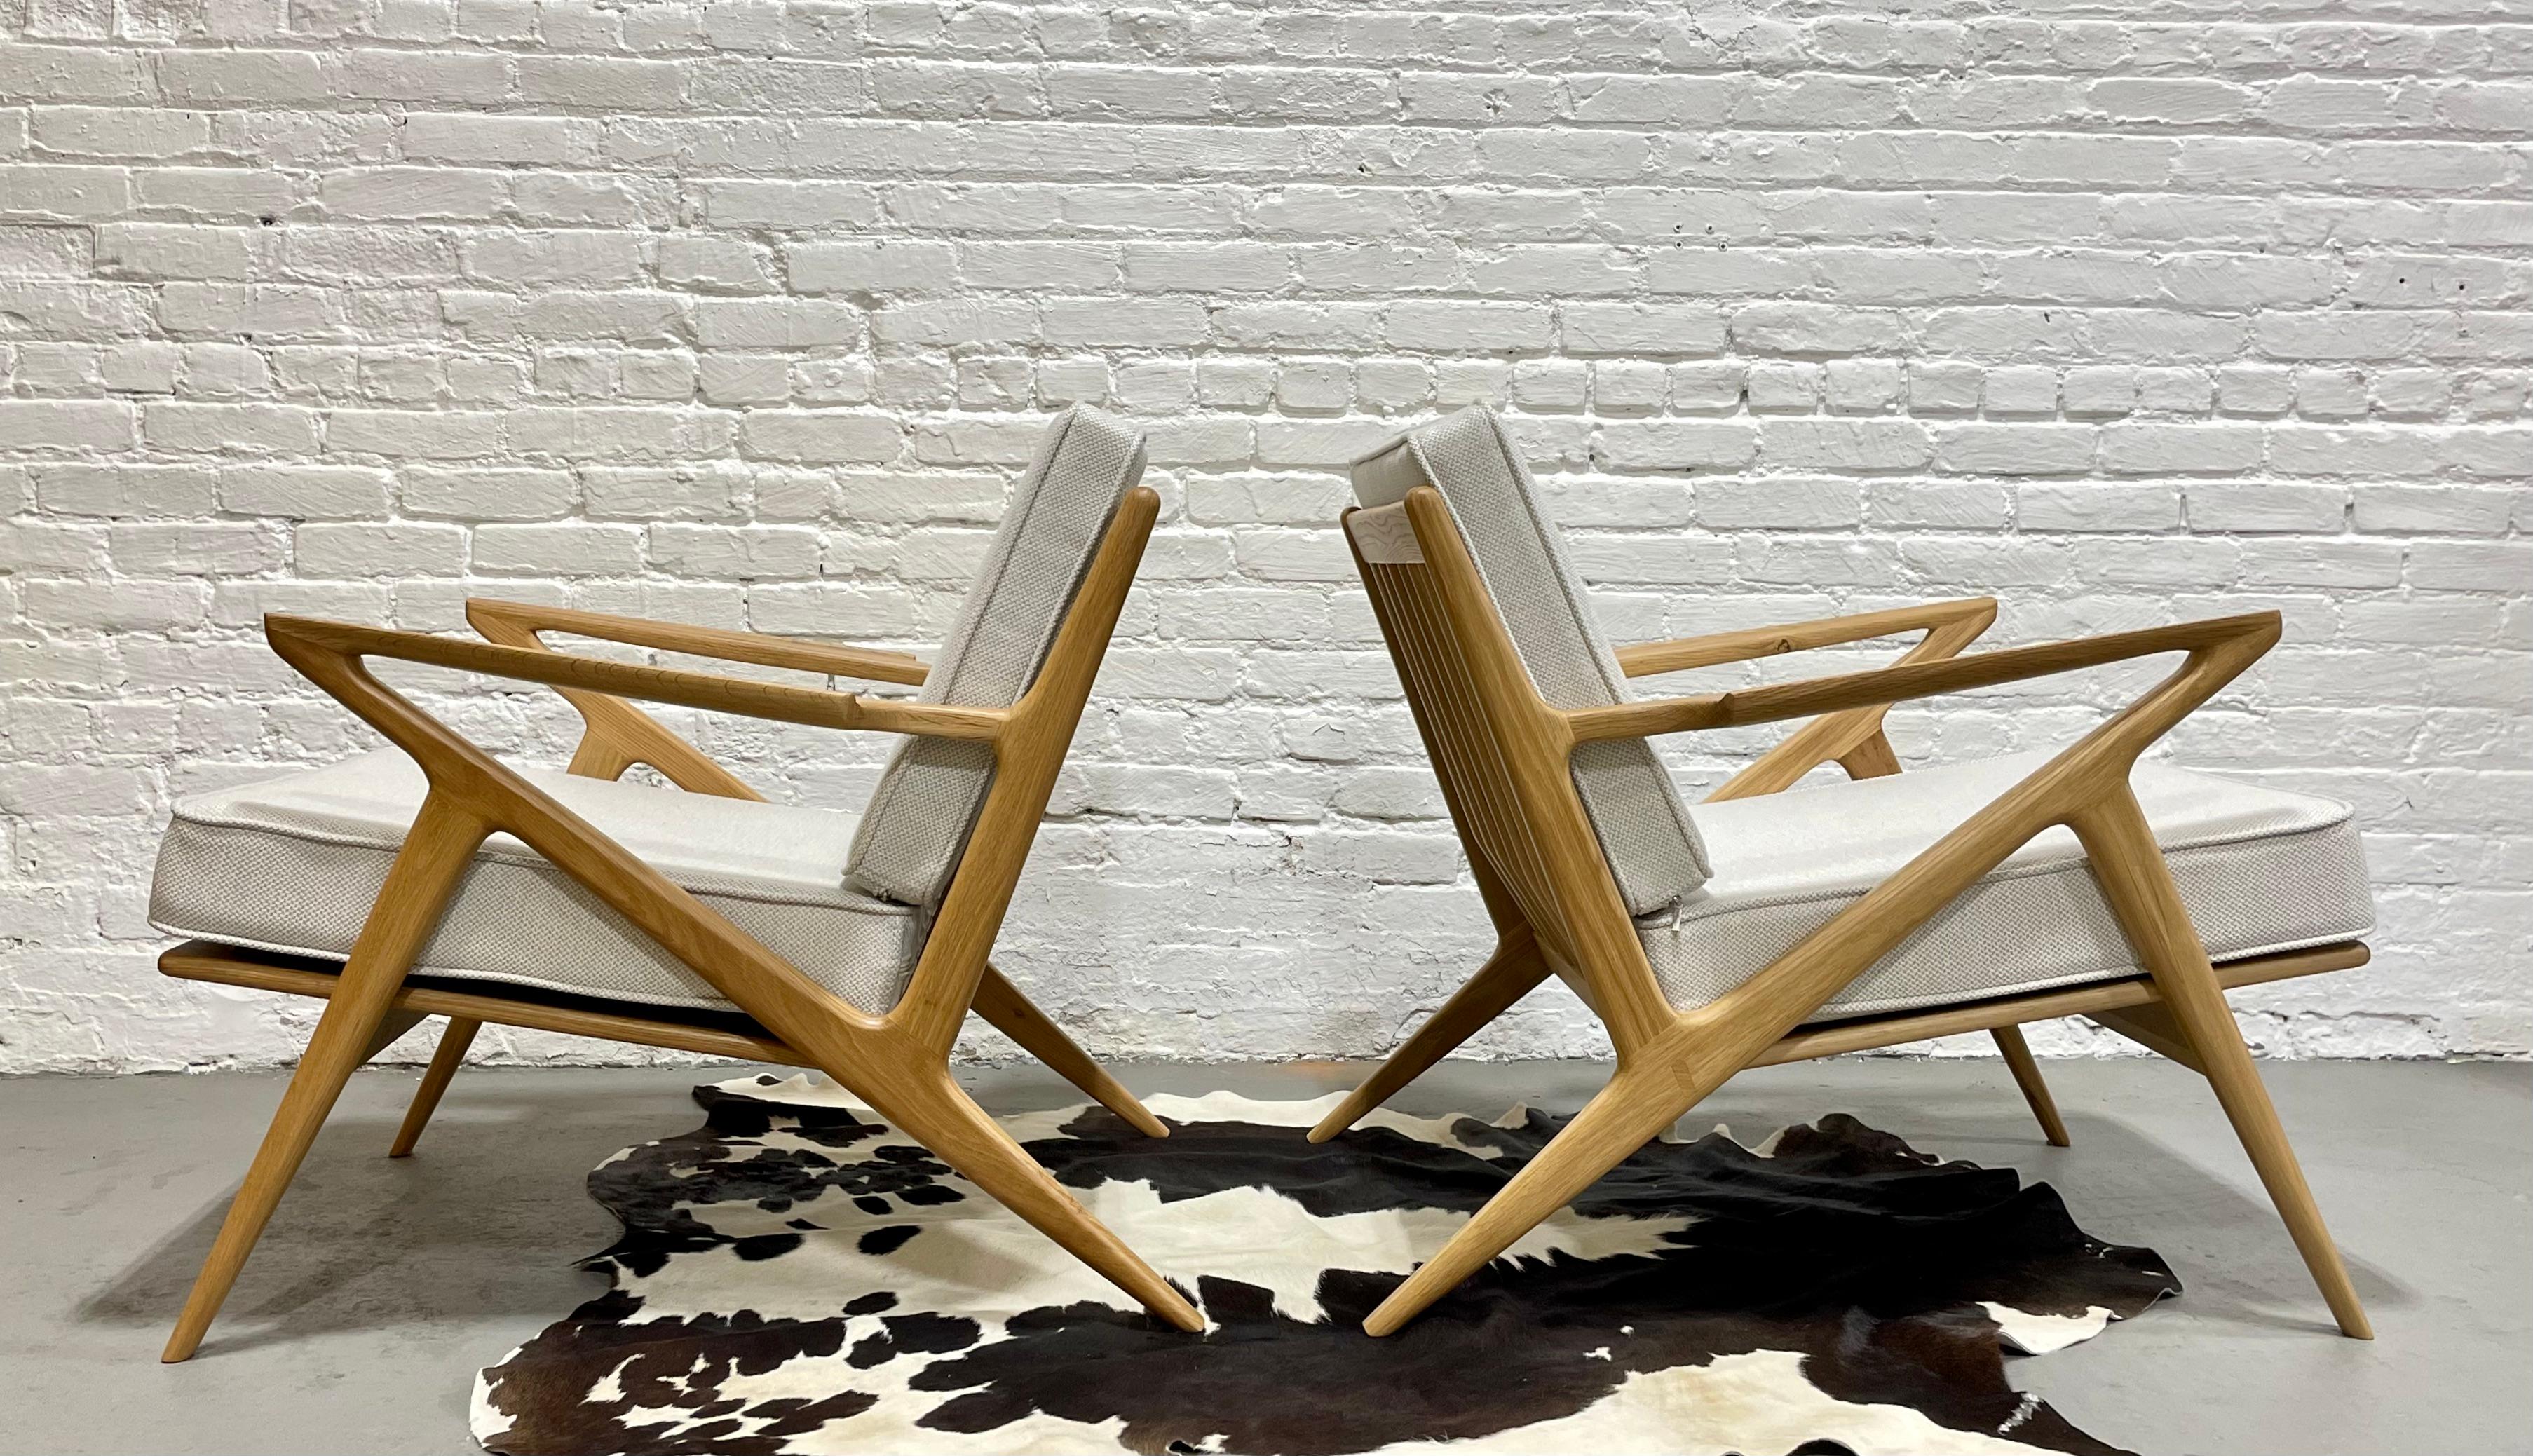 Paire de chaises de salon de style Mid Century Modern, fabriquées à la main et conçues en chêne massif. Cet ensemble incroyable offre de nombreux détails de conception tels que des accoudoirs sculptés, des lattes de dossier triangulaires et des